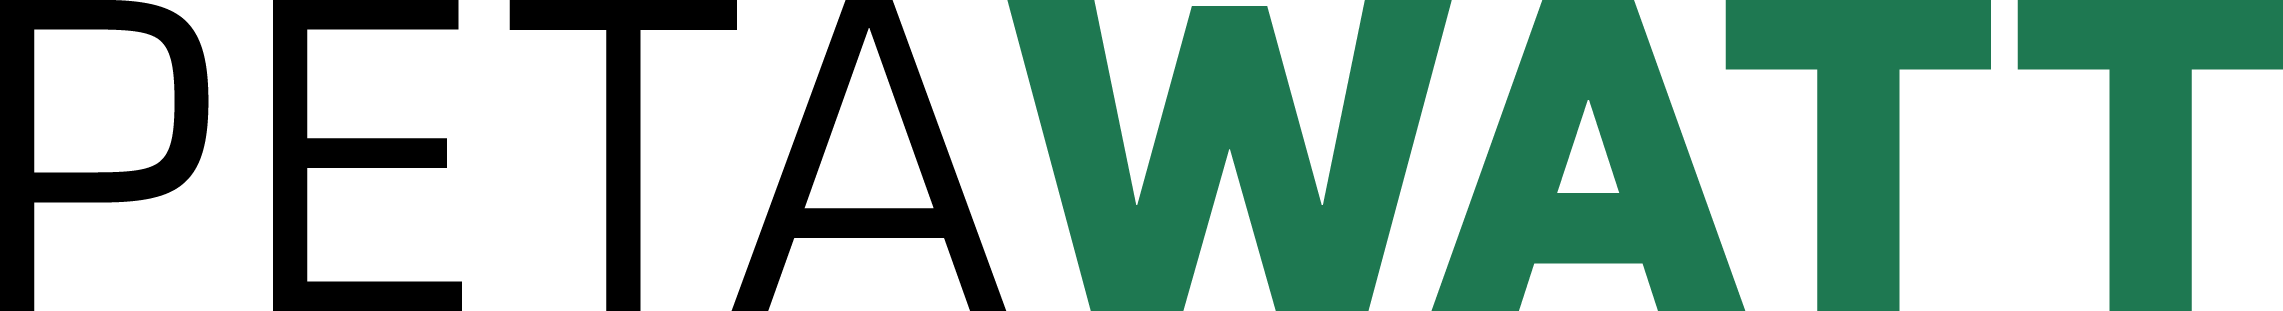 Petawatt-logo